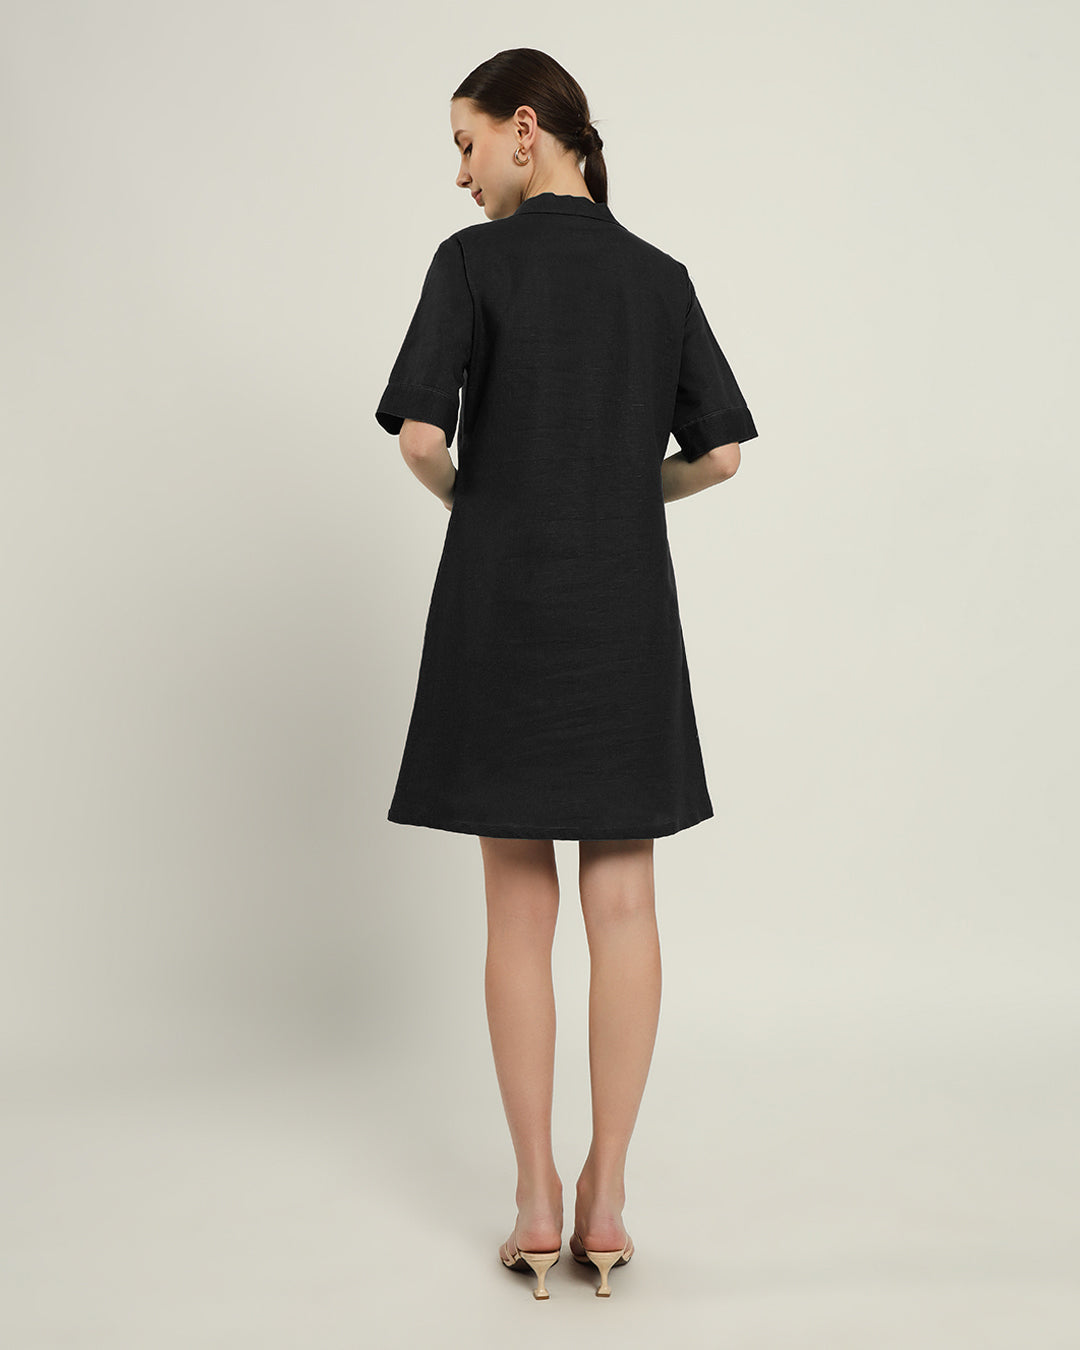 The Ermont Noir Cotton Dress